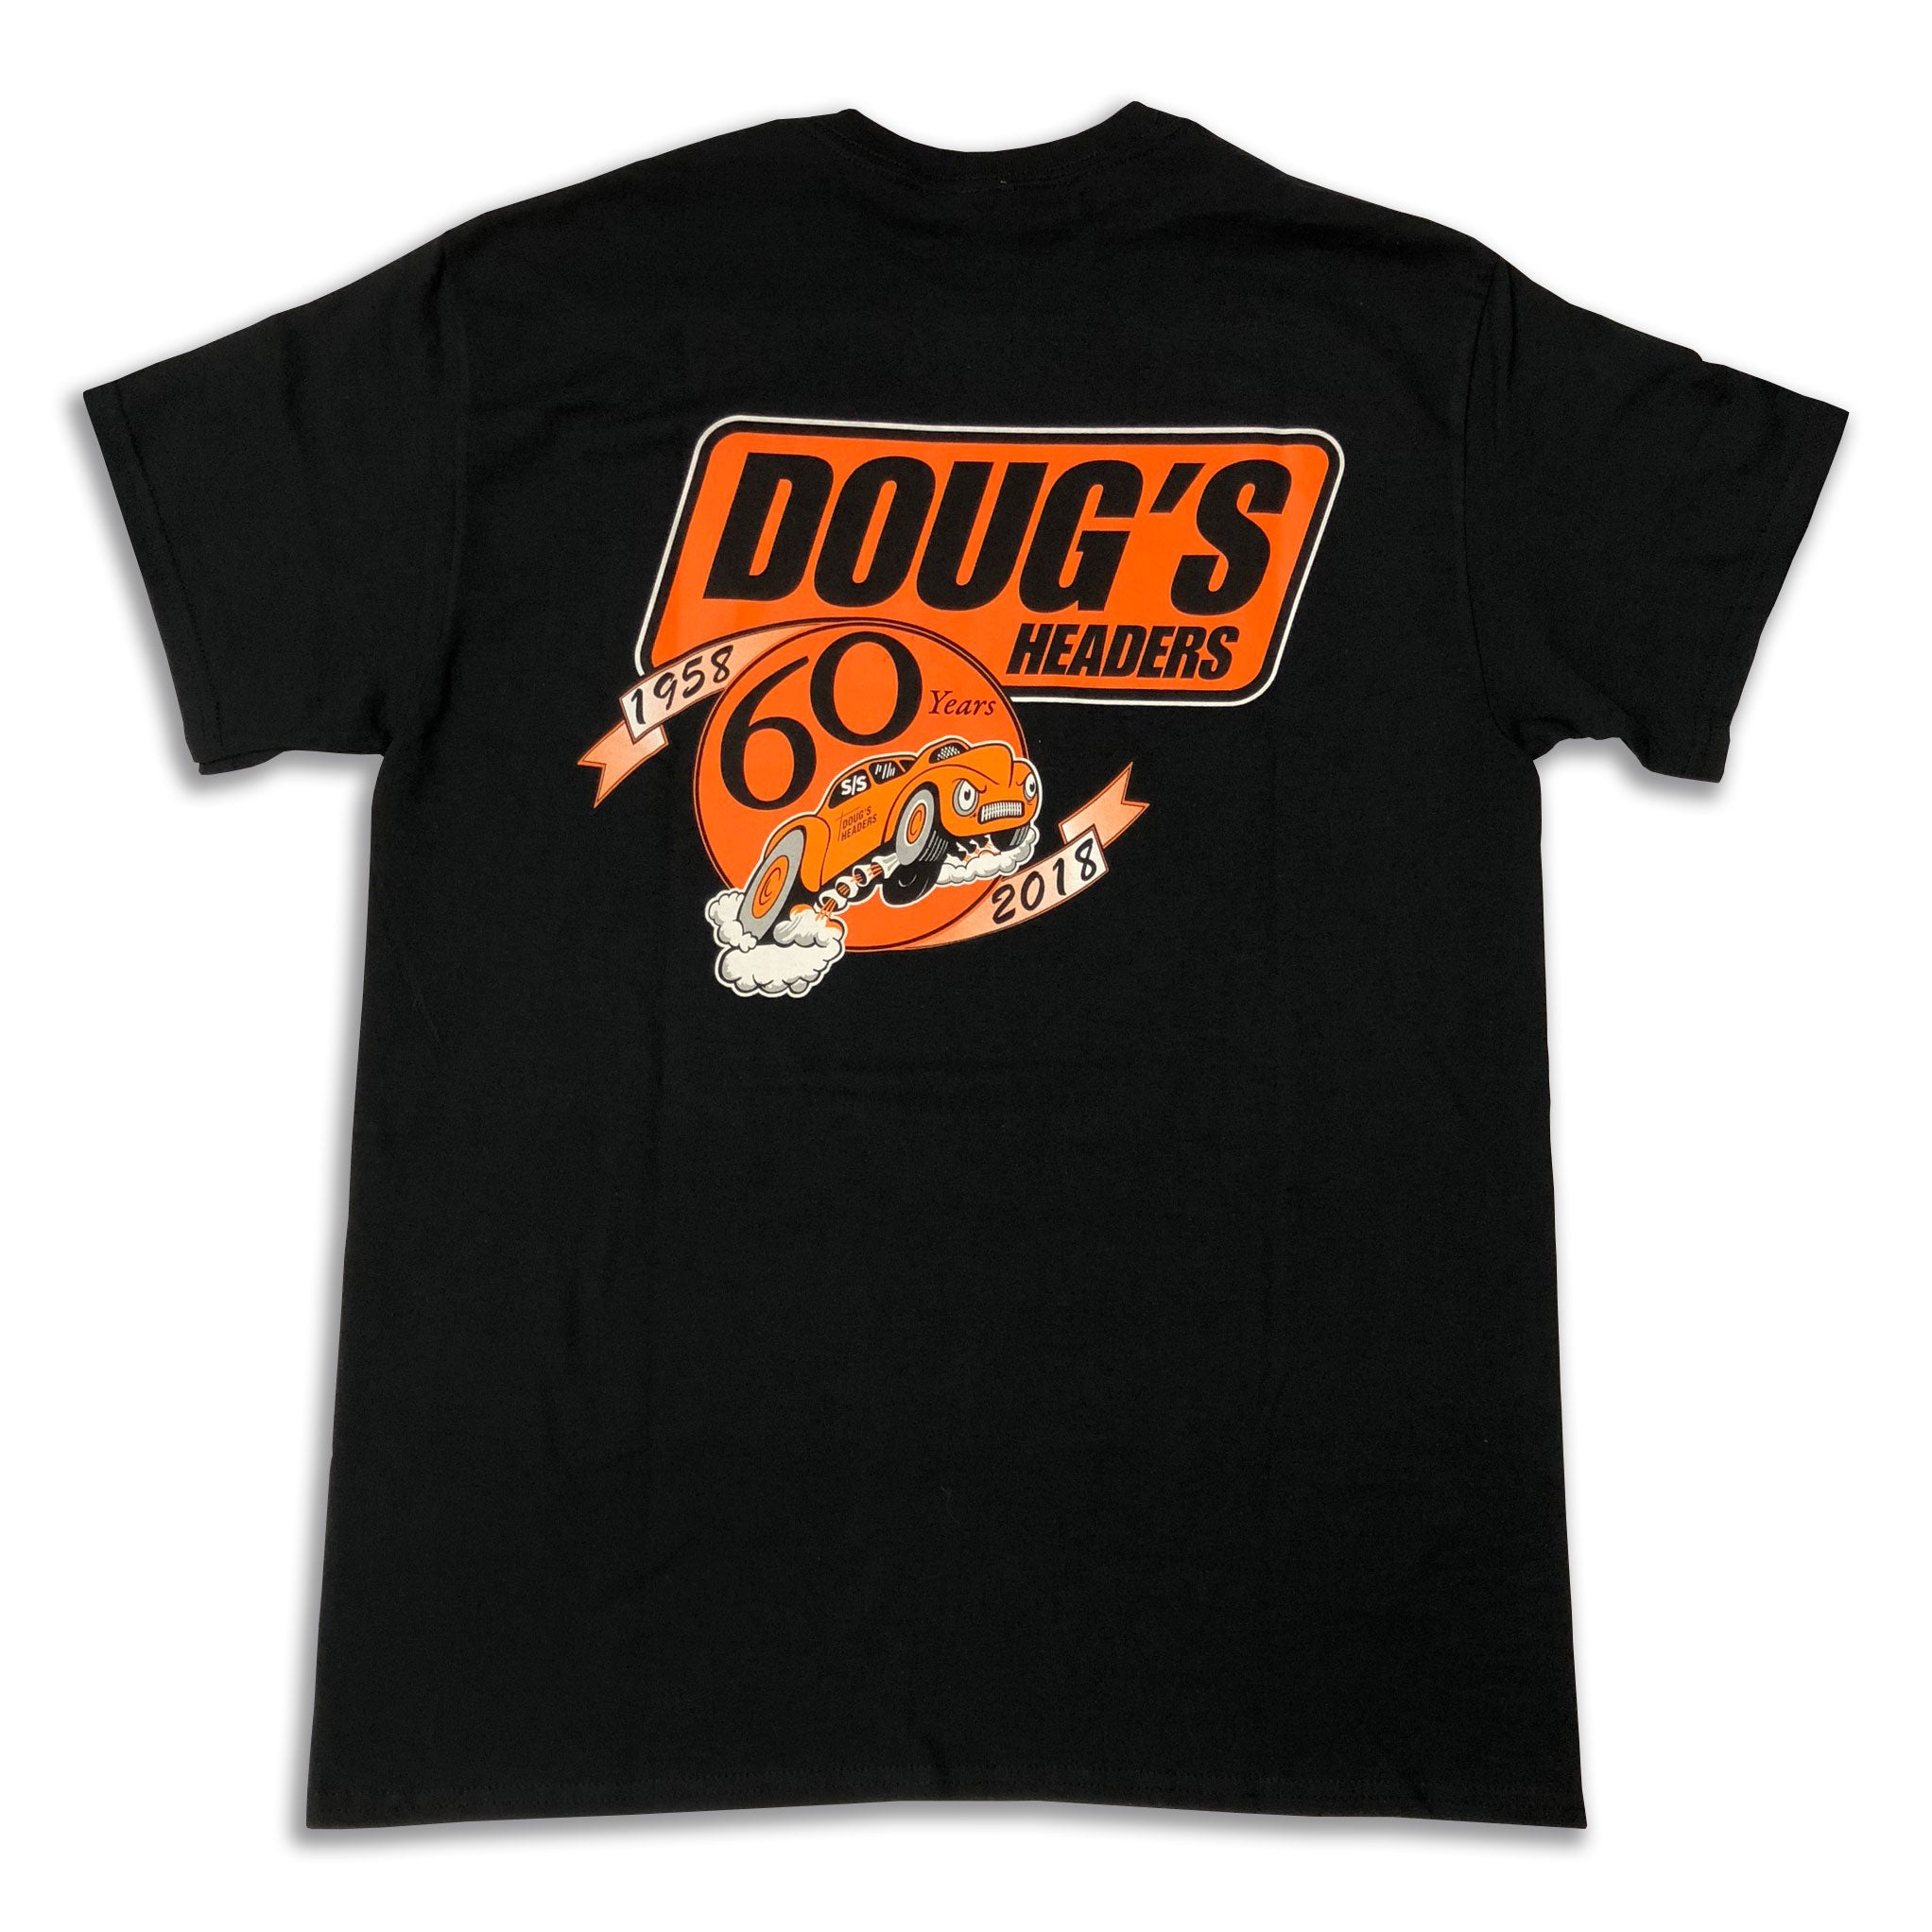 Doug's Headers T-Shirt TS400